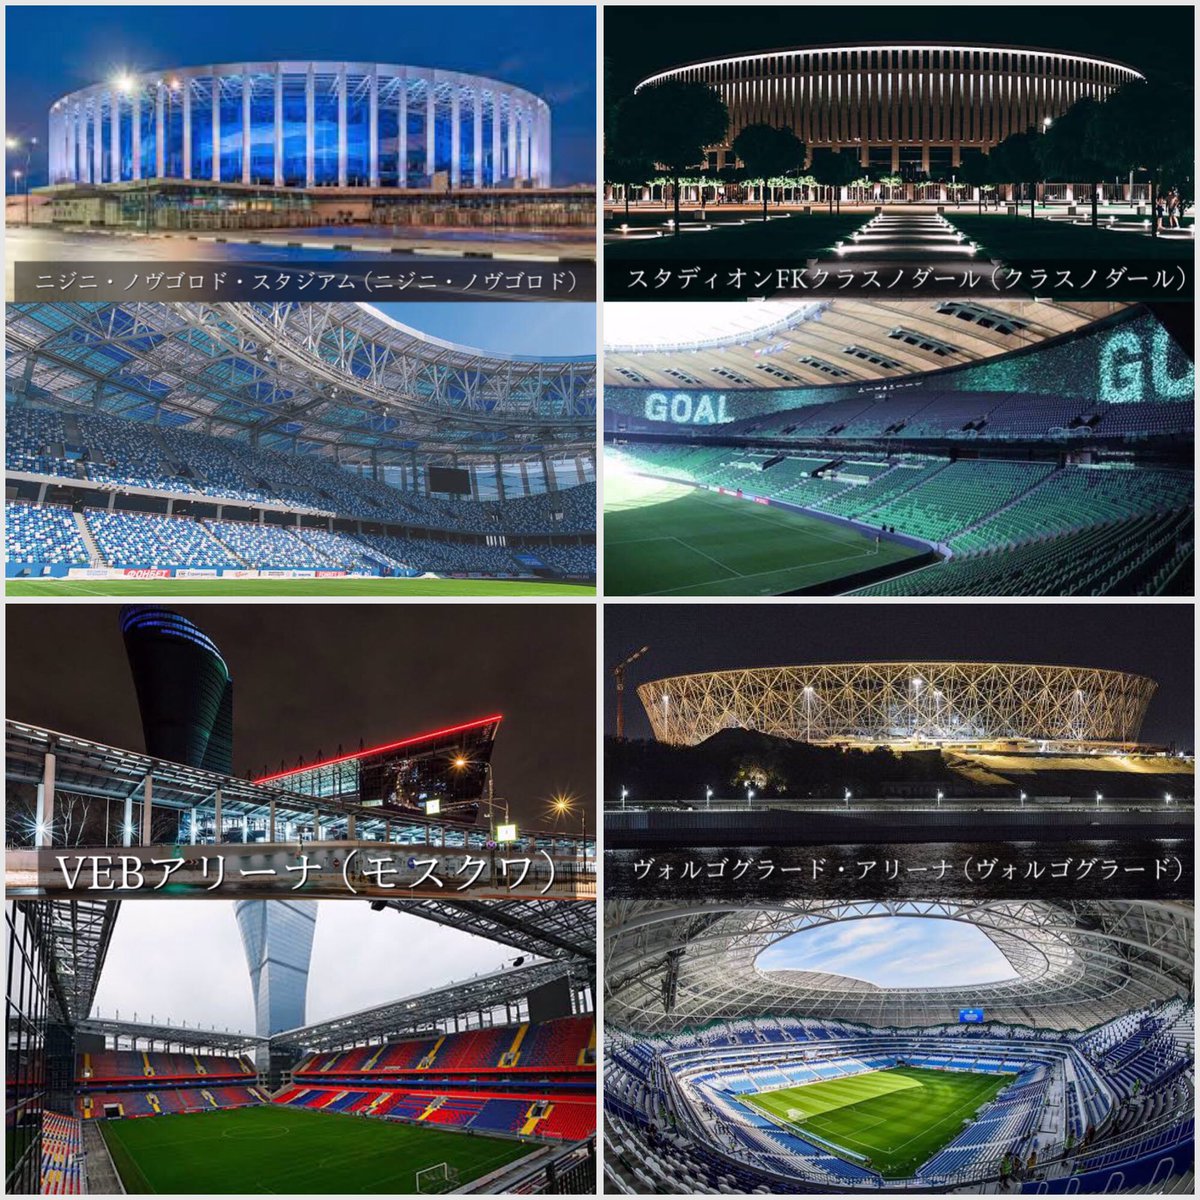 蓮 なぜ日本にはおフランスやおそロシアやエゲレスやドイッチュラントのようにお上品でお綺麗なサッカースタジアムが建たないのでございますか